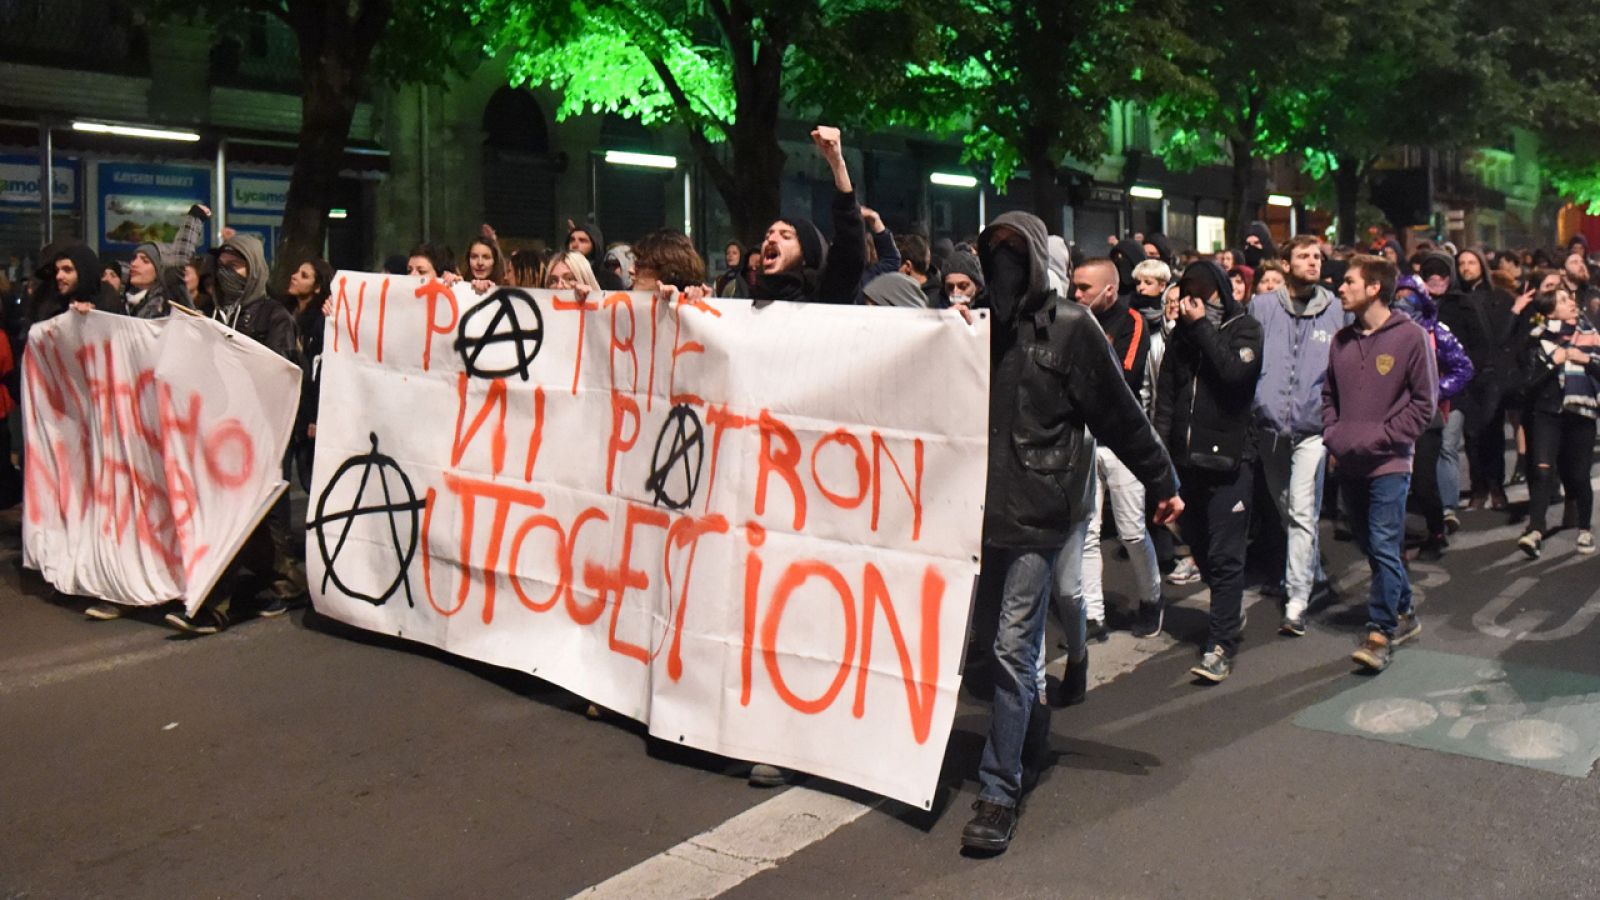 Manifestantes sostienen una pancarta en la que se lee "Ni patria ni patrón" durante una protesta contra los resultados de la primera vuelta de las presidenciales francesas